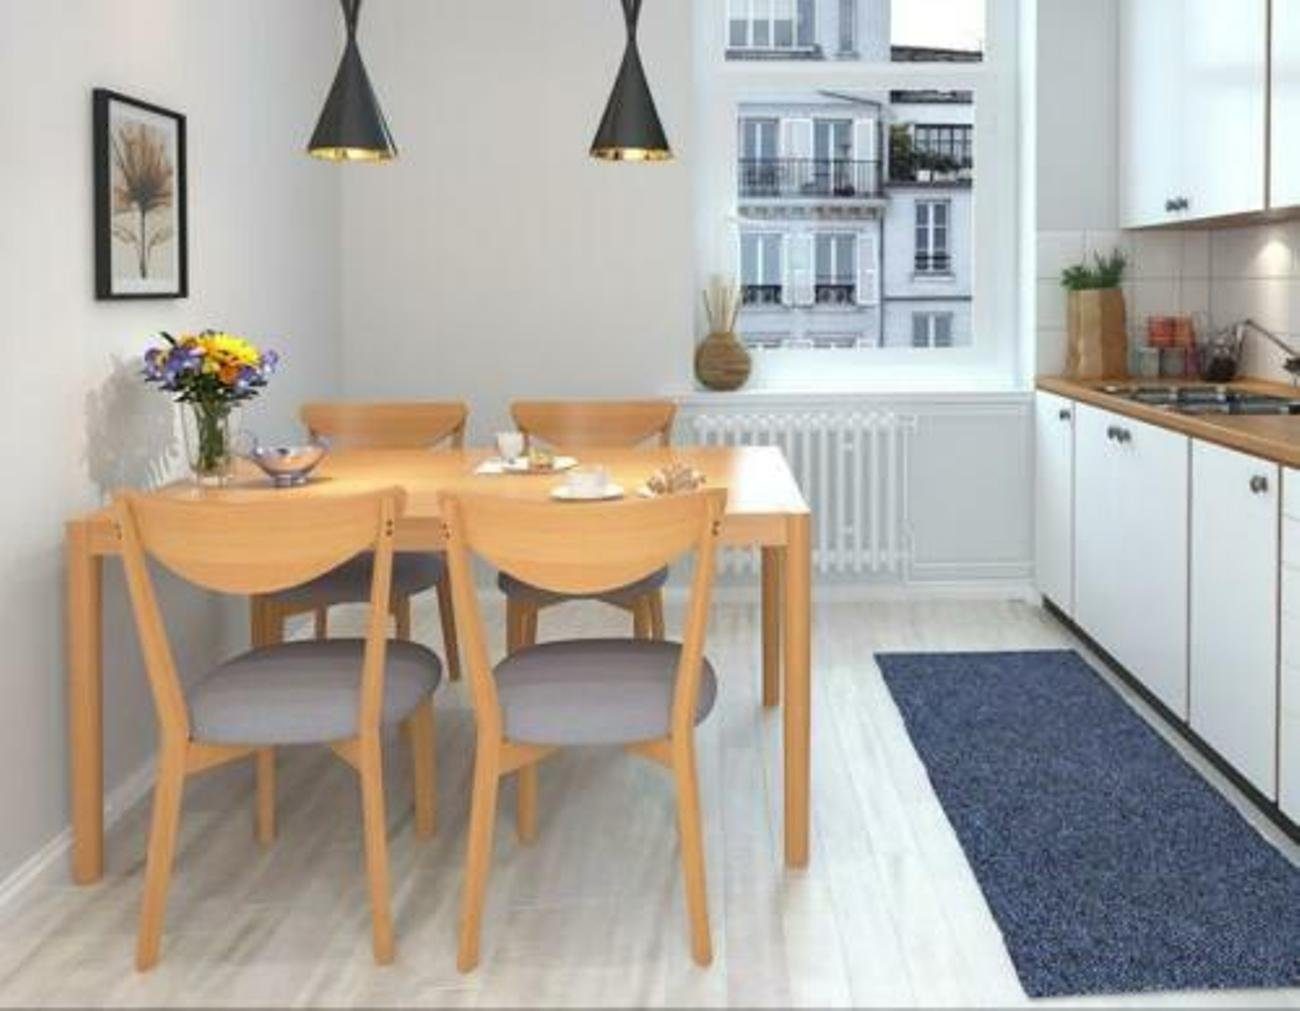 JVmoebel Esszimmer-Set, Ess Tisch + 4 Stühle Konferenz Tische Büro Holz Design Stuhl 150x85